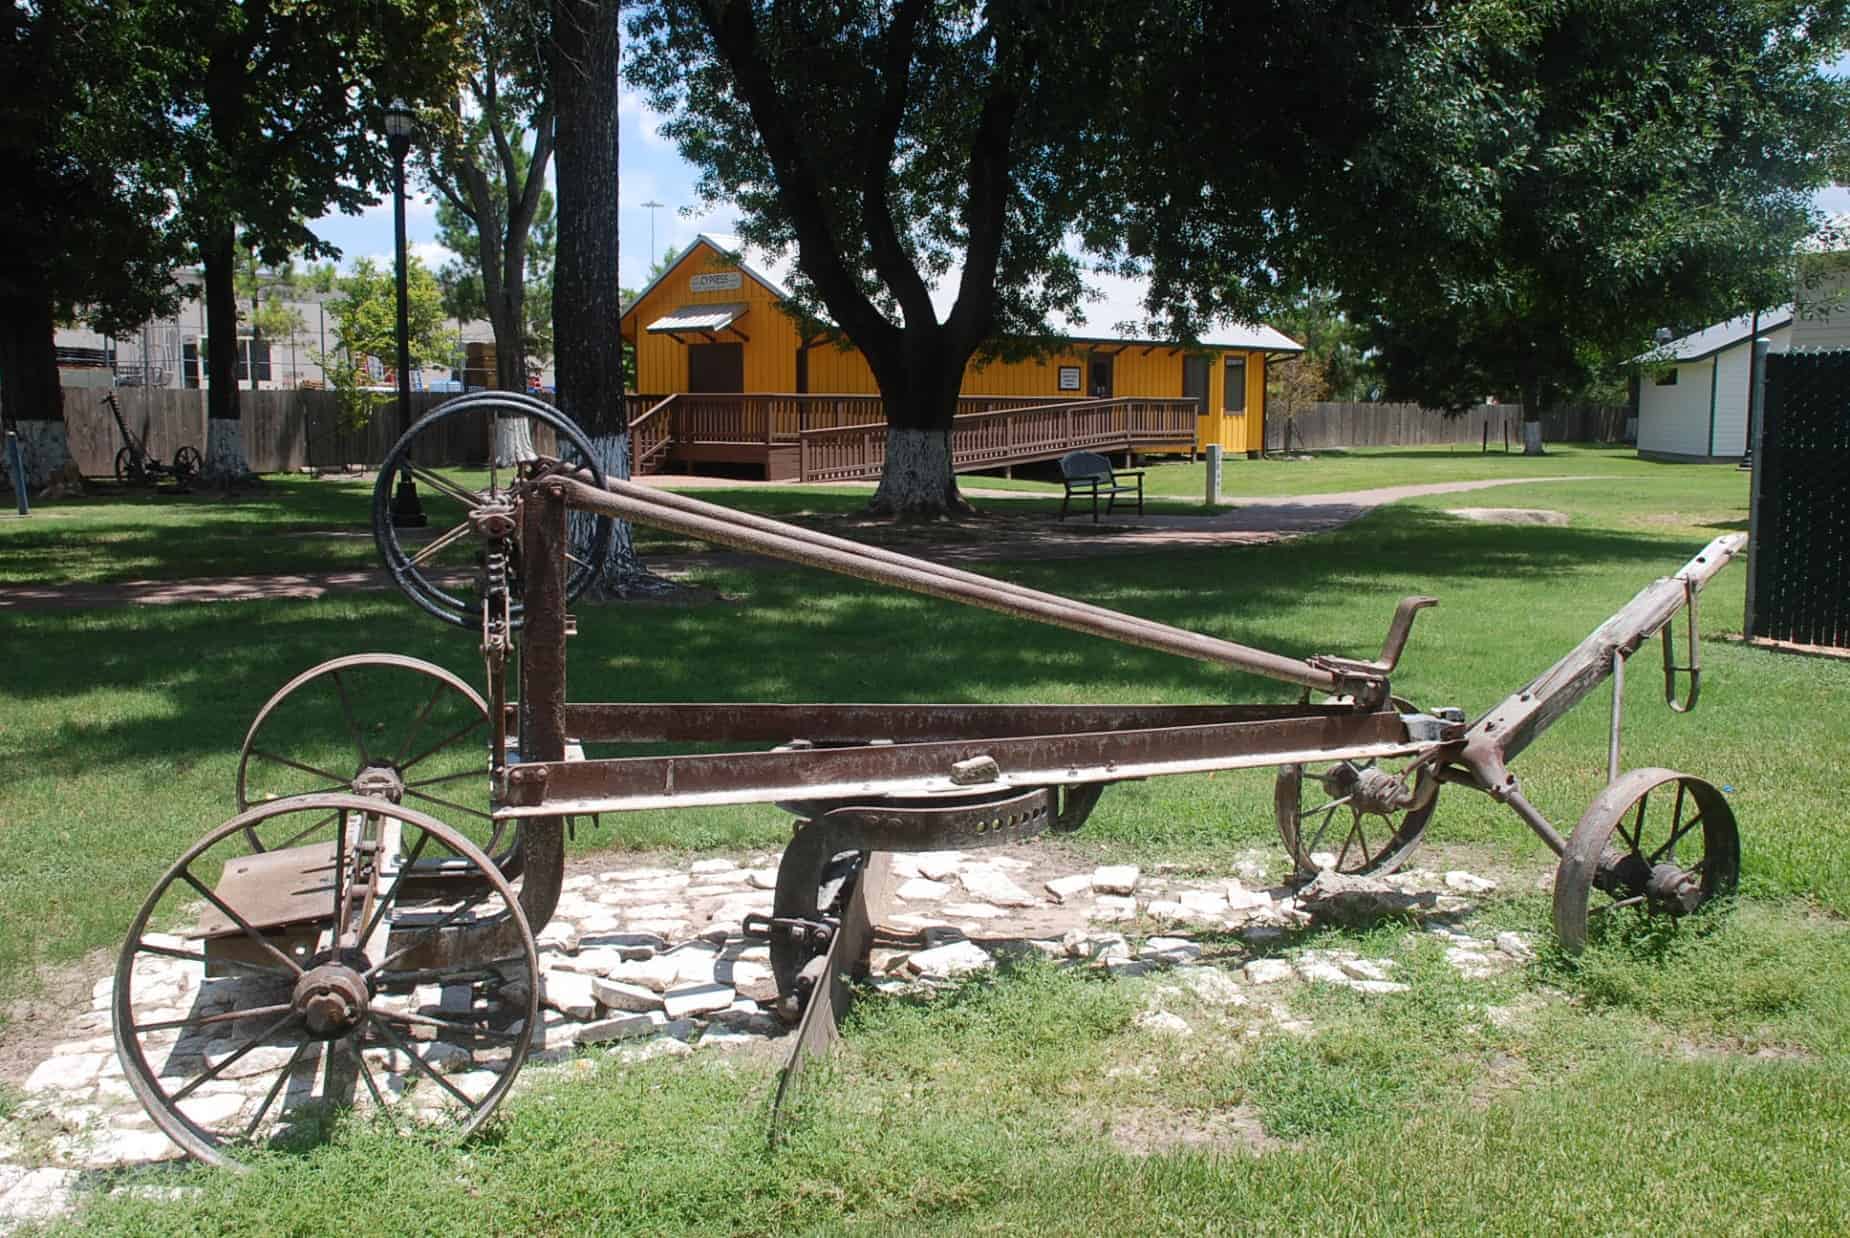 Original Farming Equipment at Cypress Top Historic Park